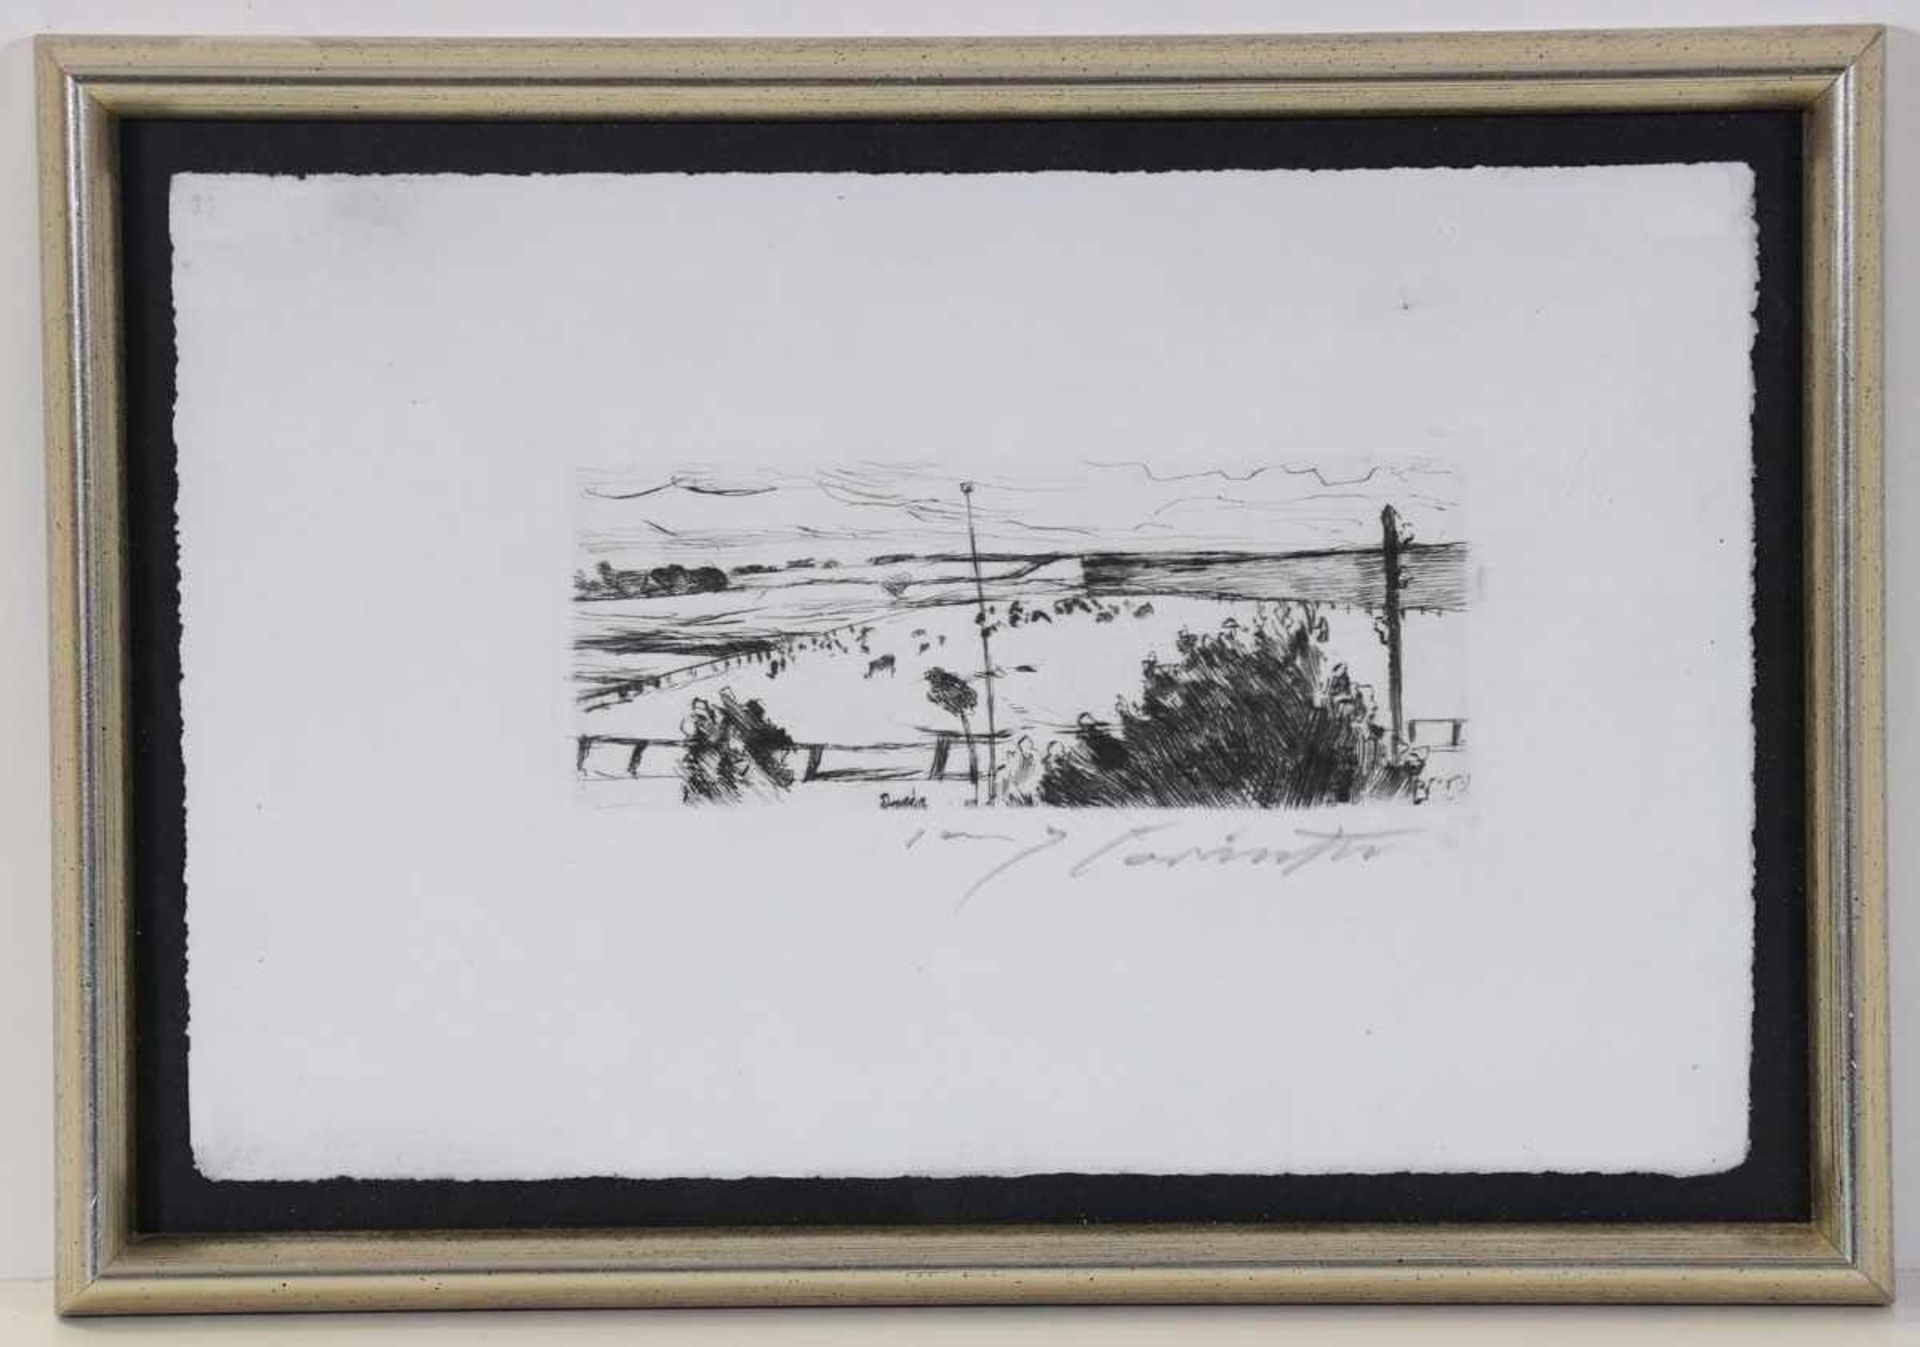 Lovis Corinth1858 Tapiau - 1925 Zandvoort - Weite Landschaft mit weidenden Kühen - - Image 2 of 2